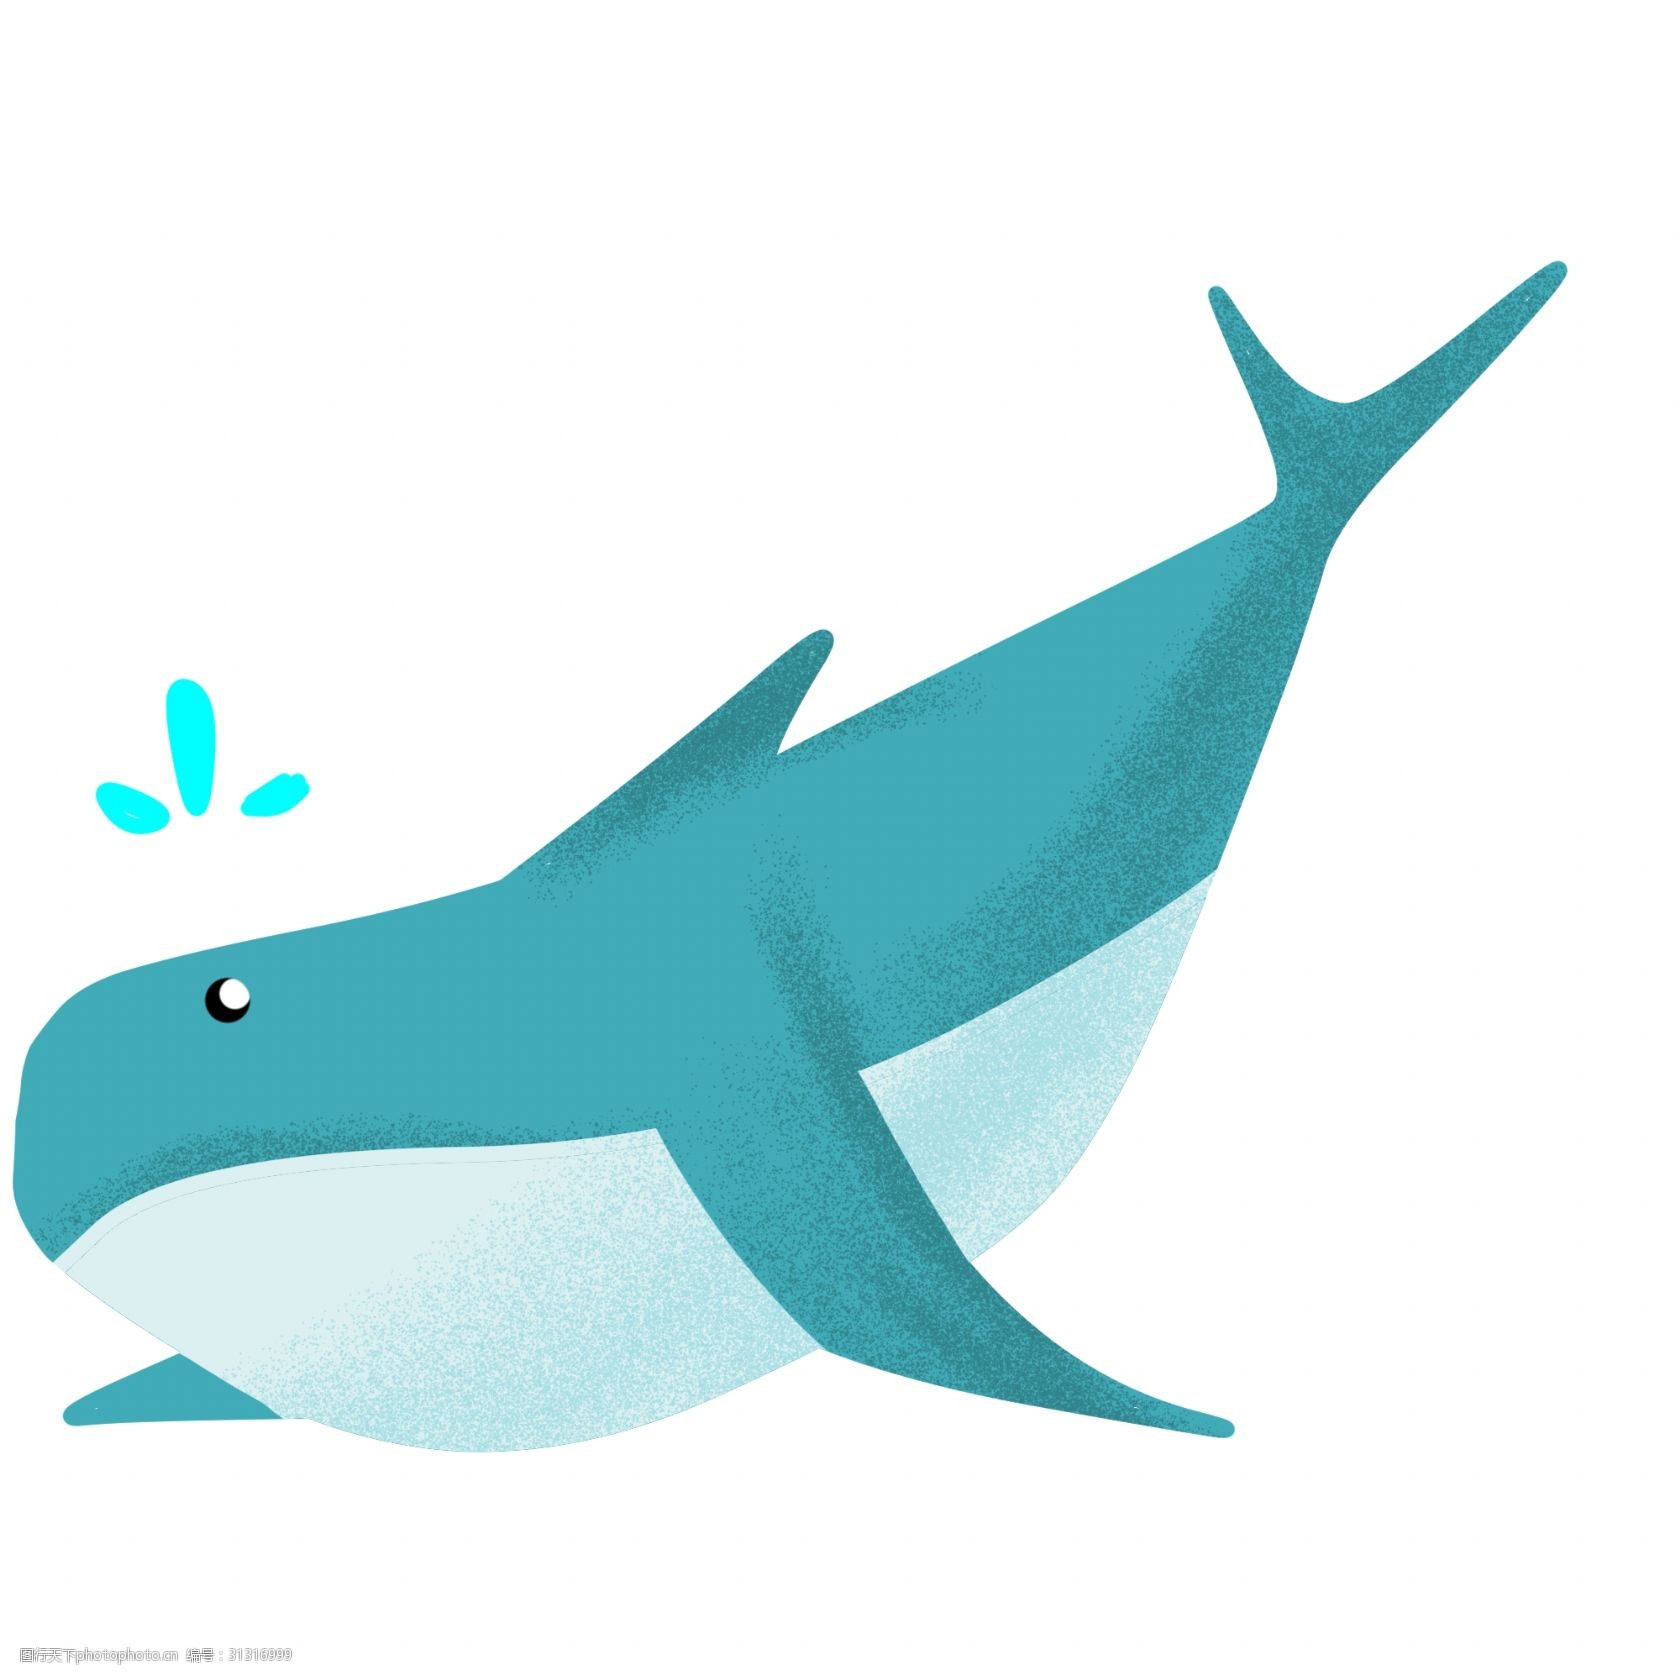 保护环境 卡通插画 大海 海洋 环保 保护地球 蓝色大鲸 地球日 手绘